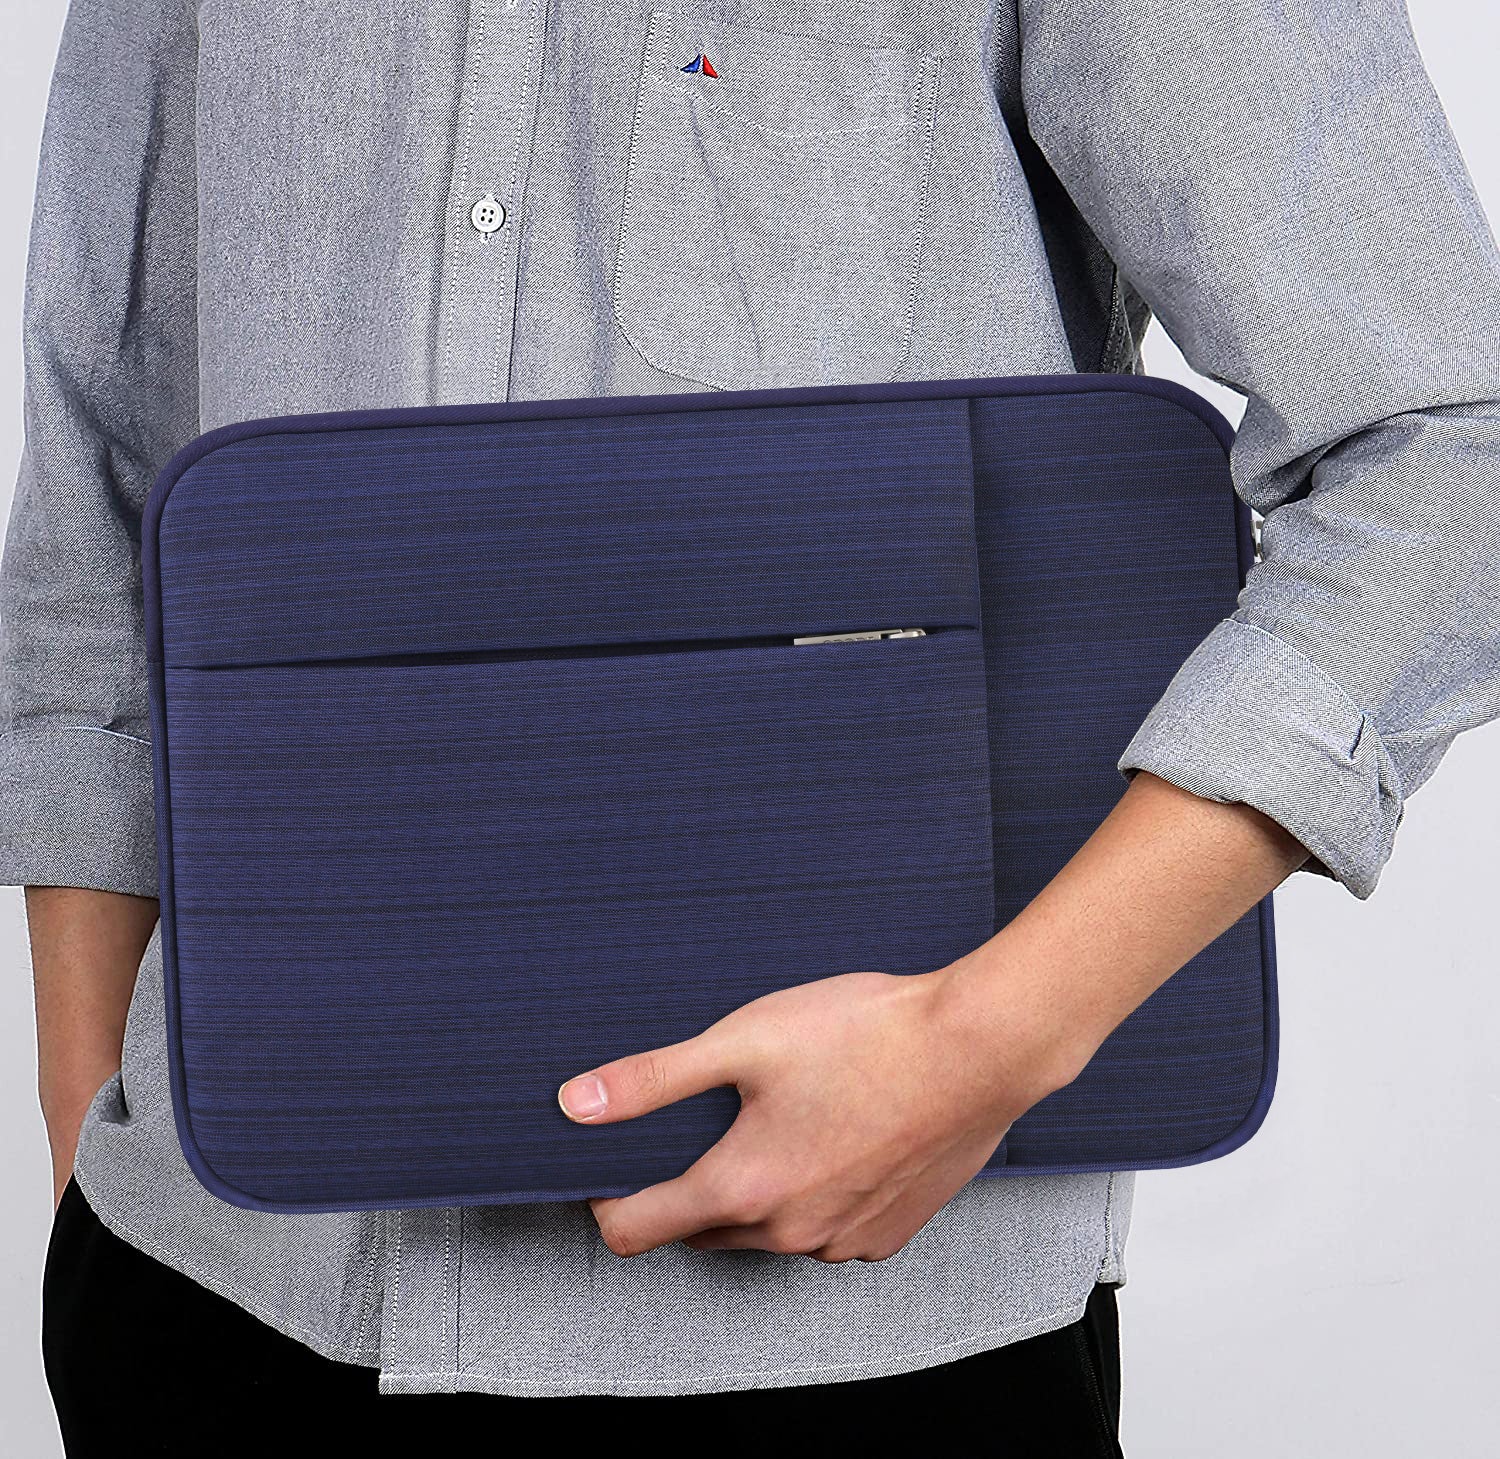 Blue Laptop Sleeves